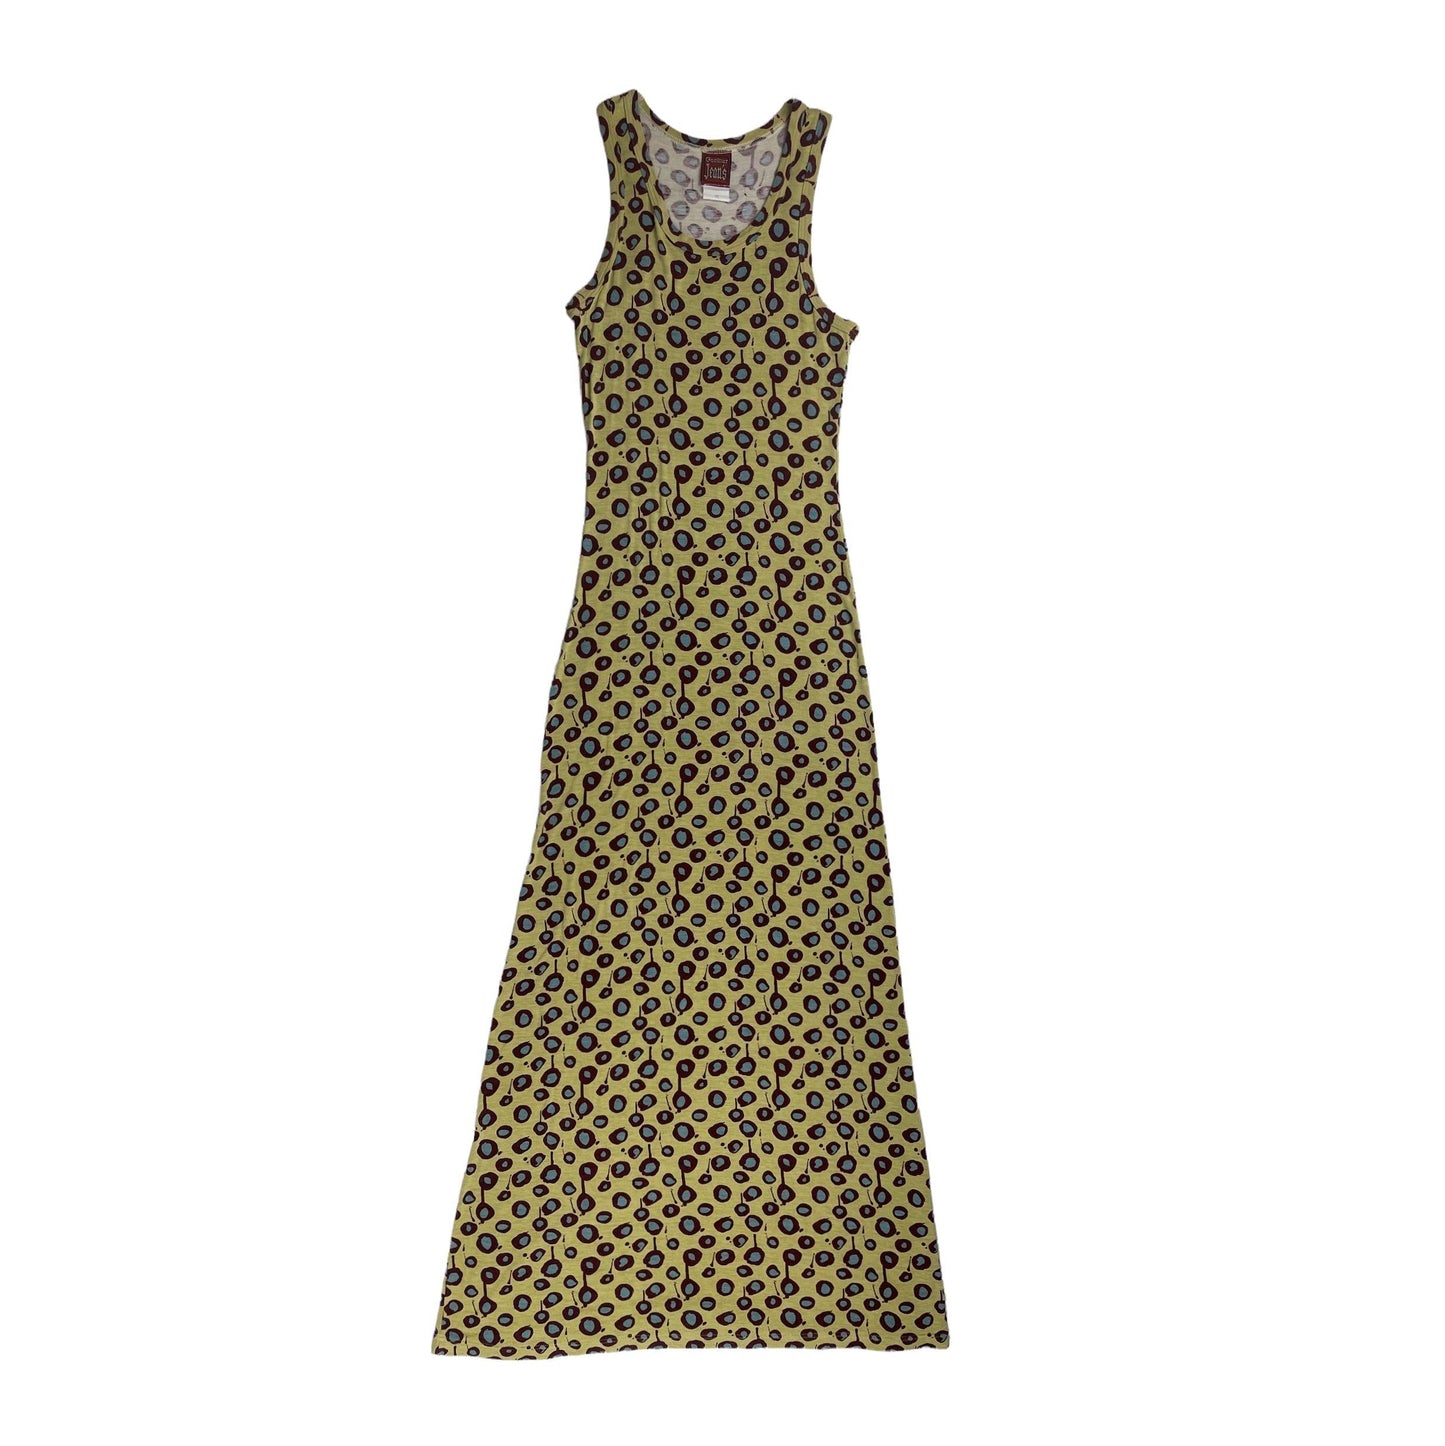 S/S 1996 Jean Paul Gaultier dot dress - Known Source